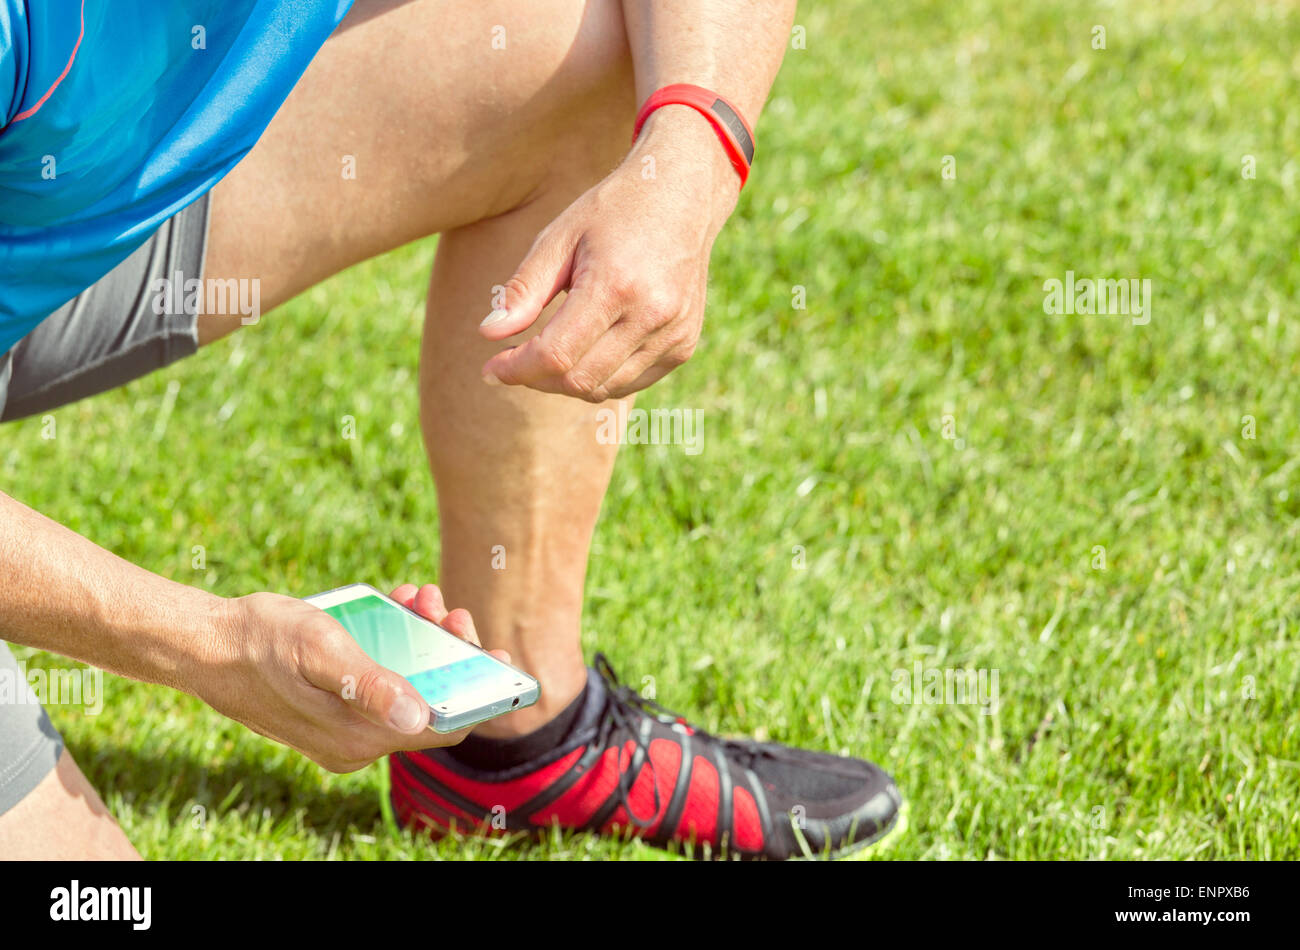 Sportlicher Mann kniet auf einer Wiese und prüft seine Fitness Ergebnisse auf einem Smartphone. Er trägt ein Fitness Tracker Armband auf seiner linken Seite Stockfoto